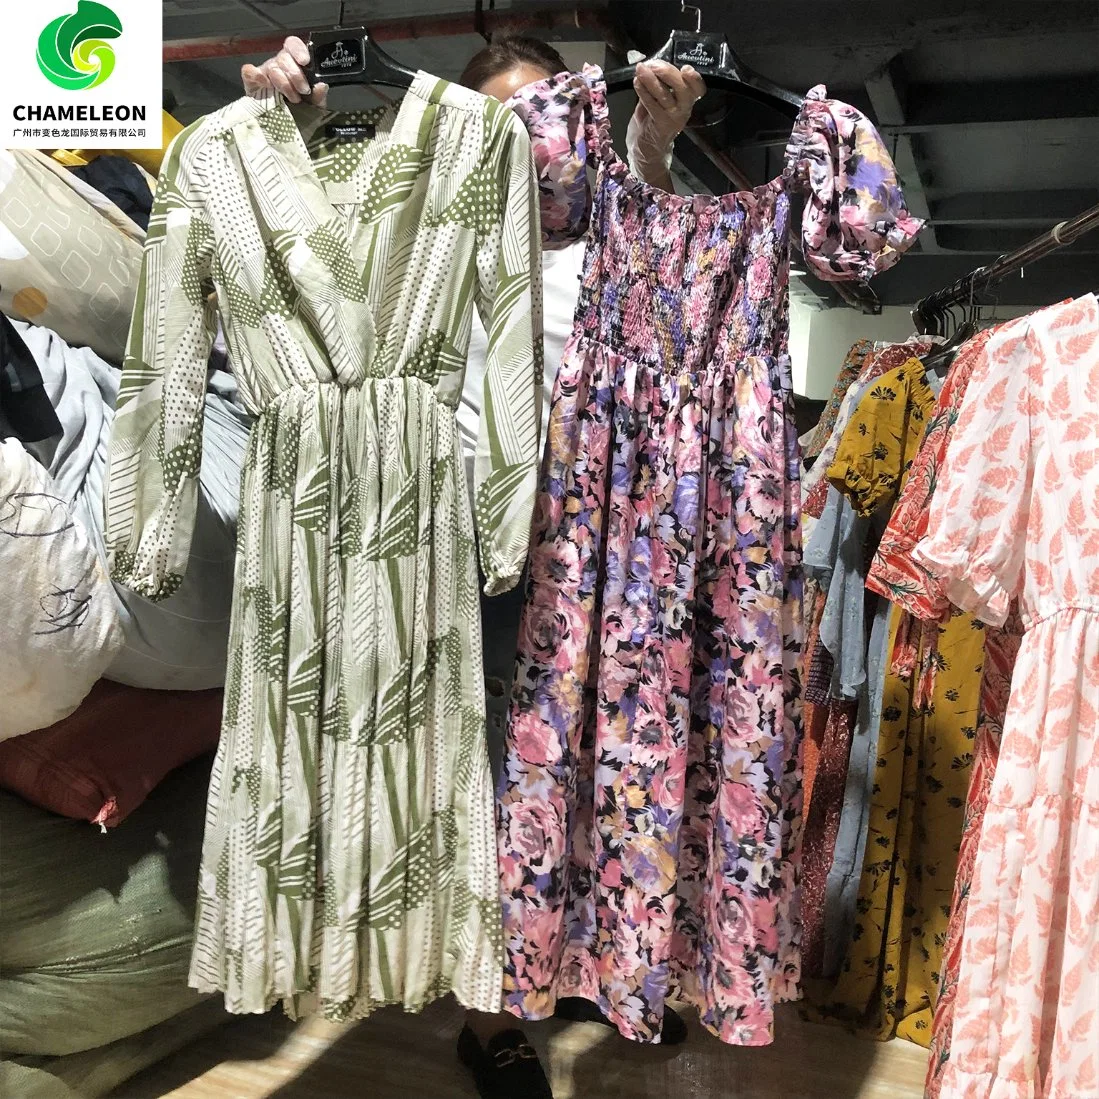 سعر كومة الجملة النساء الملابس استخدمت الملابس الملابس في الهواء الطلق اليد الثانية الملابس في بالات من القطن في أفريقيا